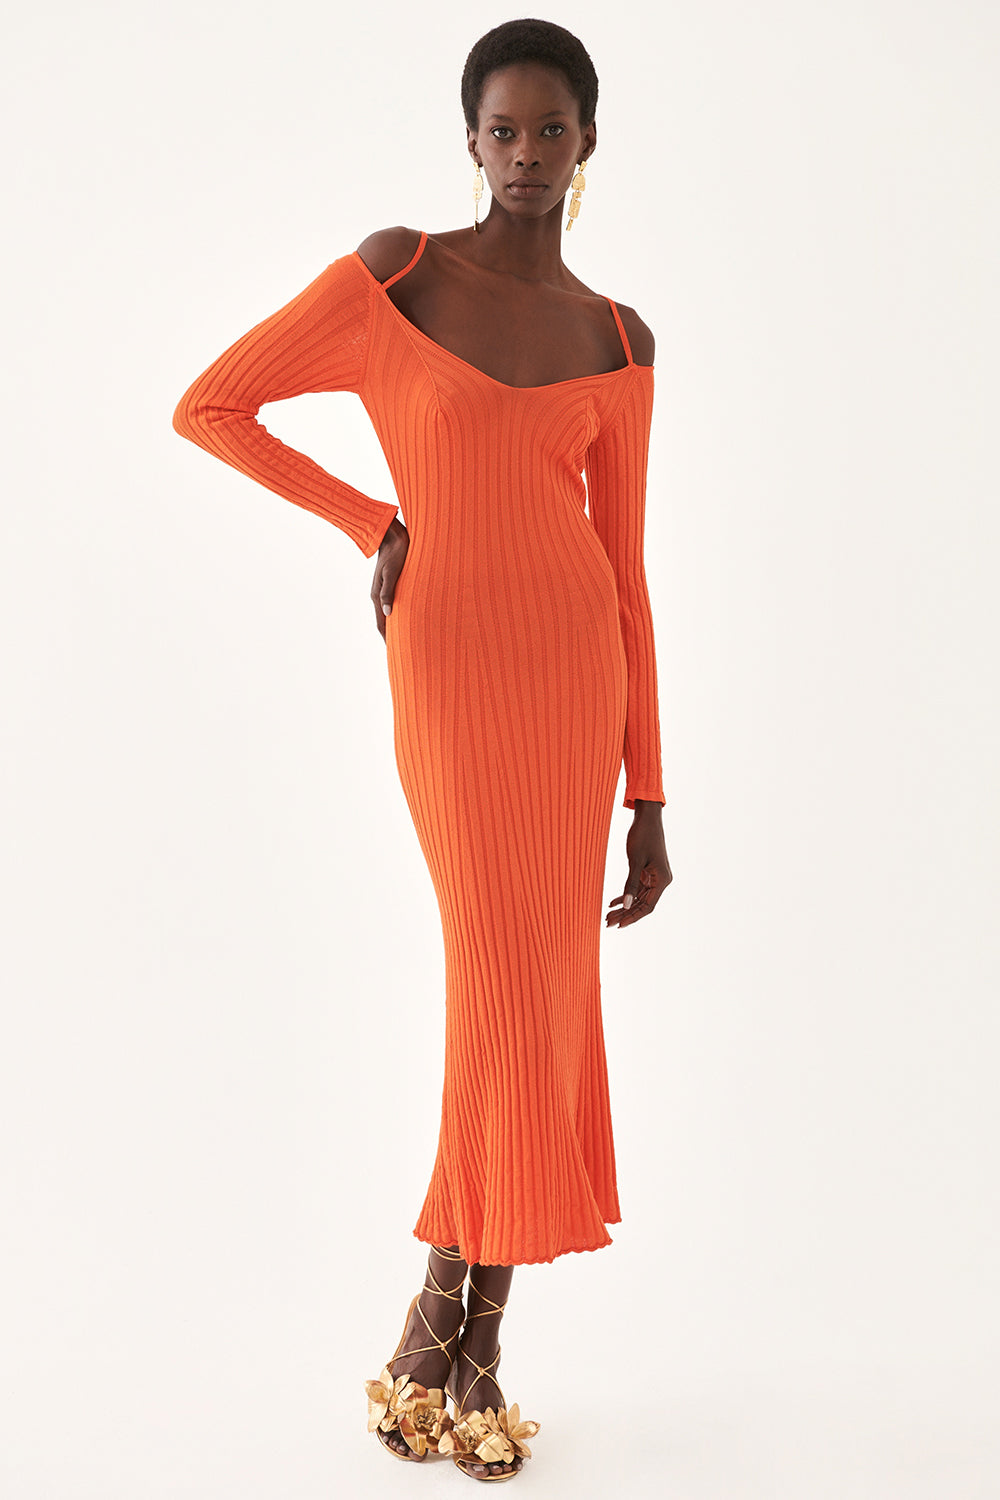 Периас џемпер фустан портокал 0121